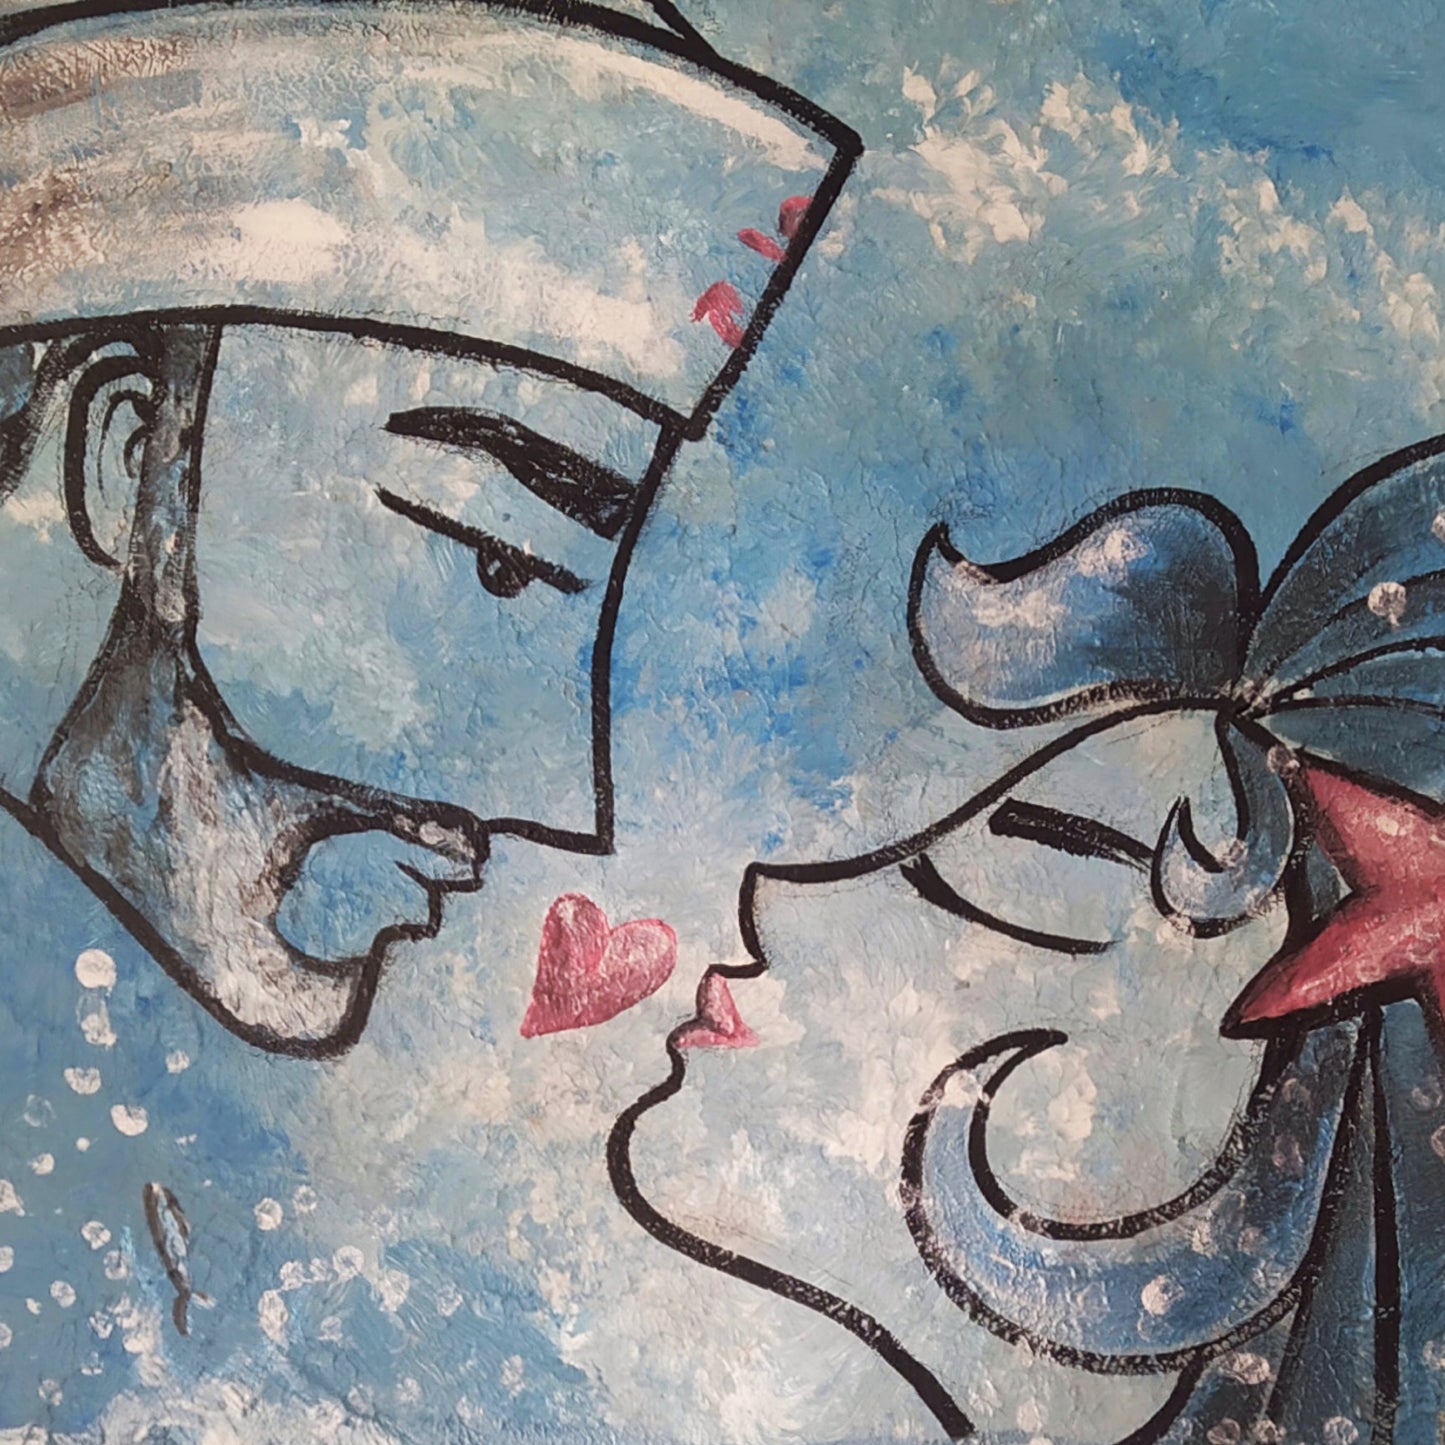 Mermaid and sailor, acrylic paint on canvas.